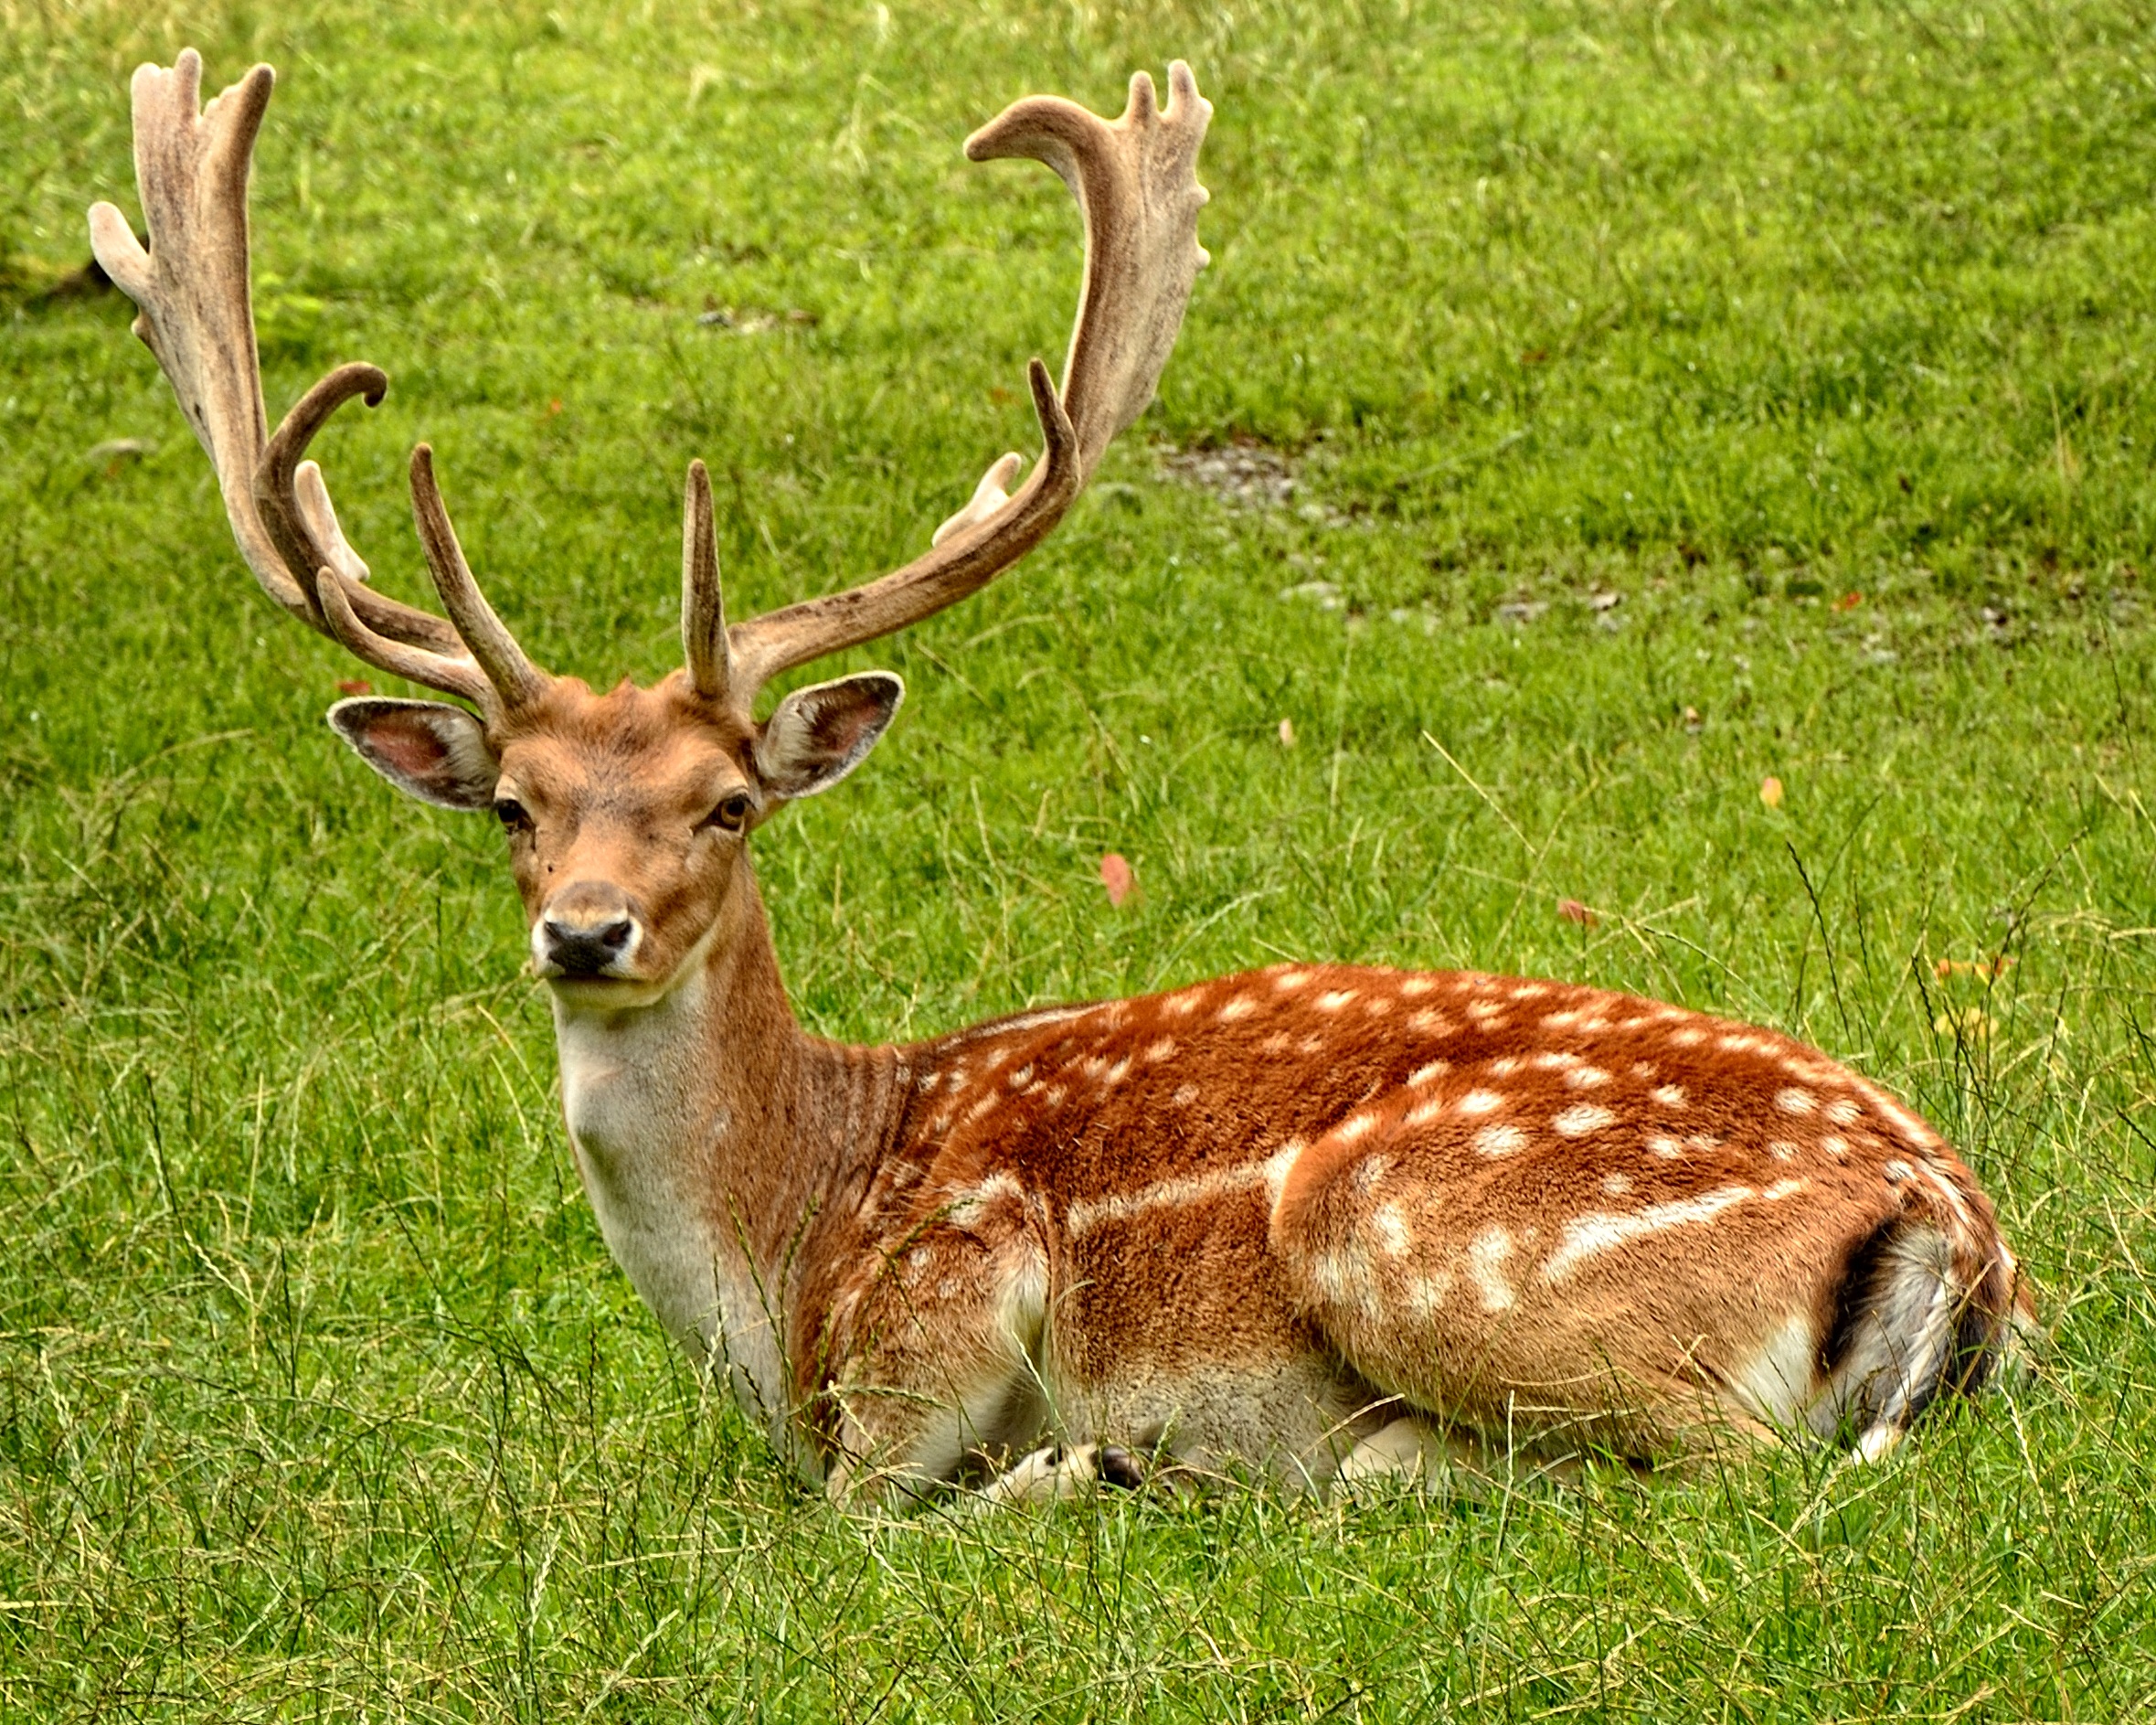 A young deer lies on the green grass